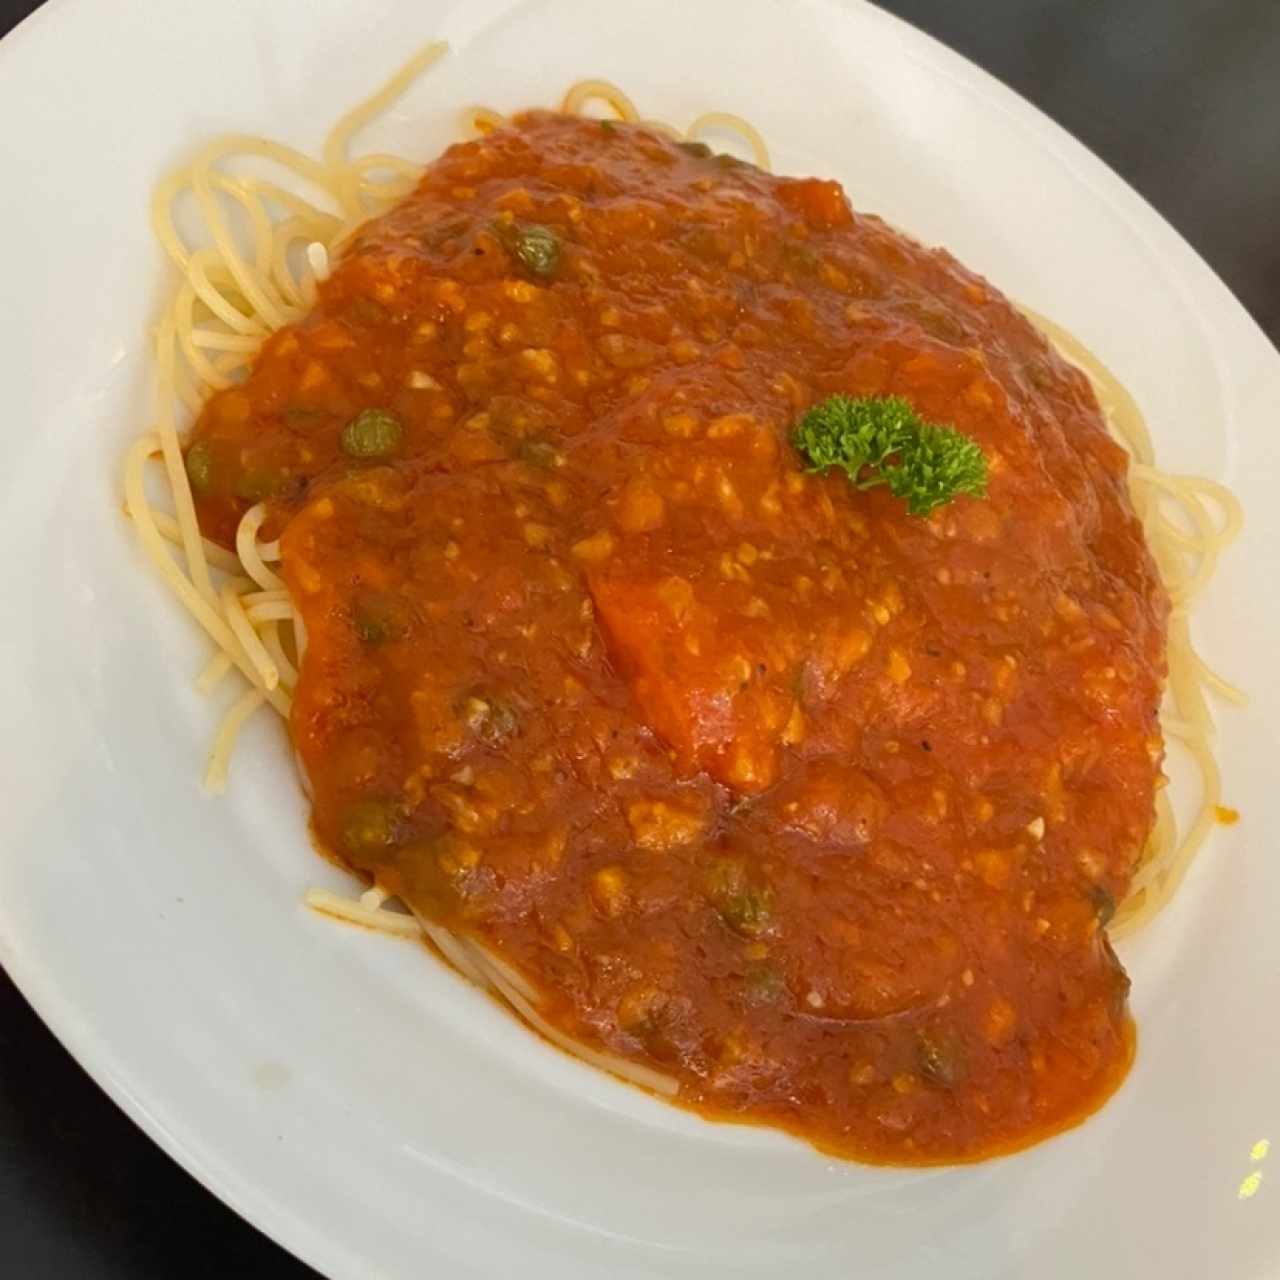 Spaghetti alla pomodoro